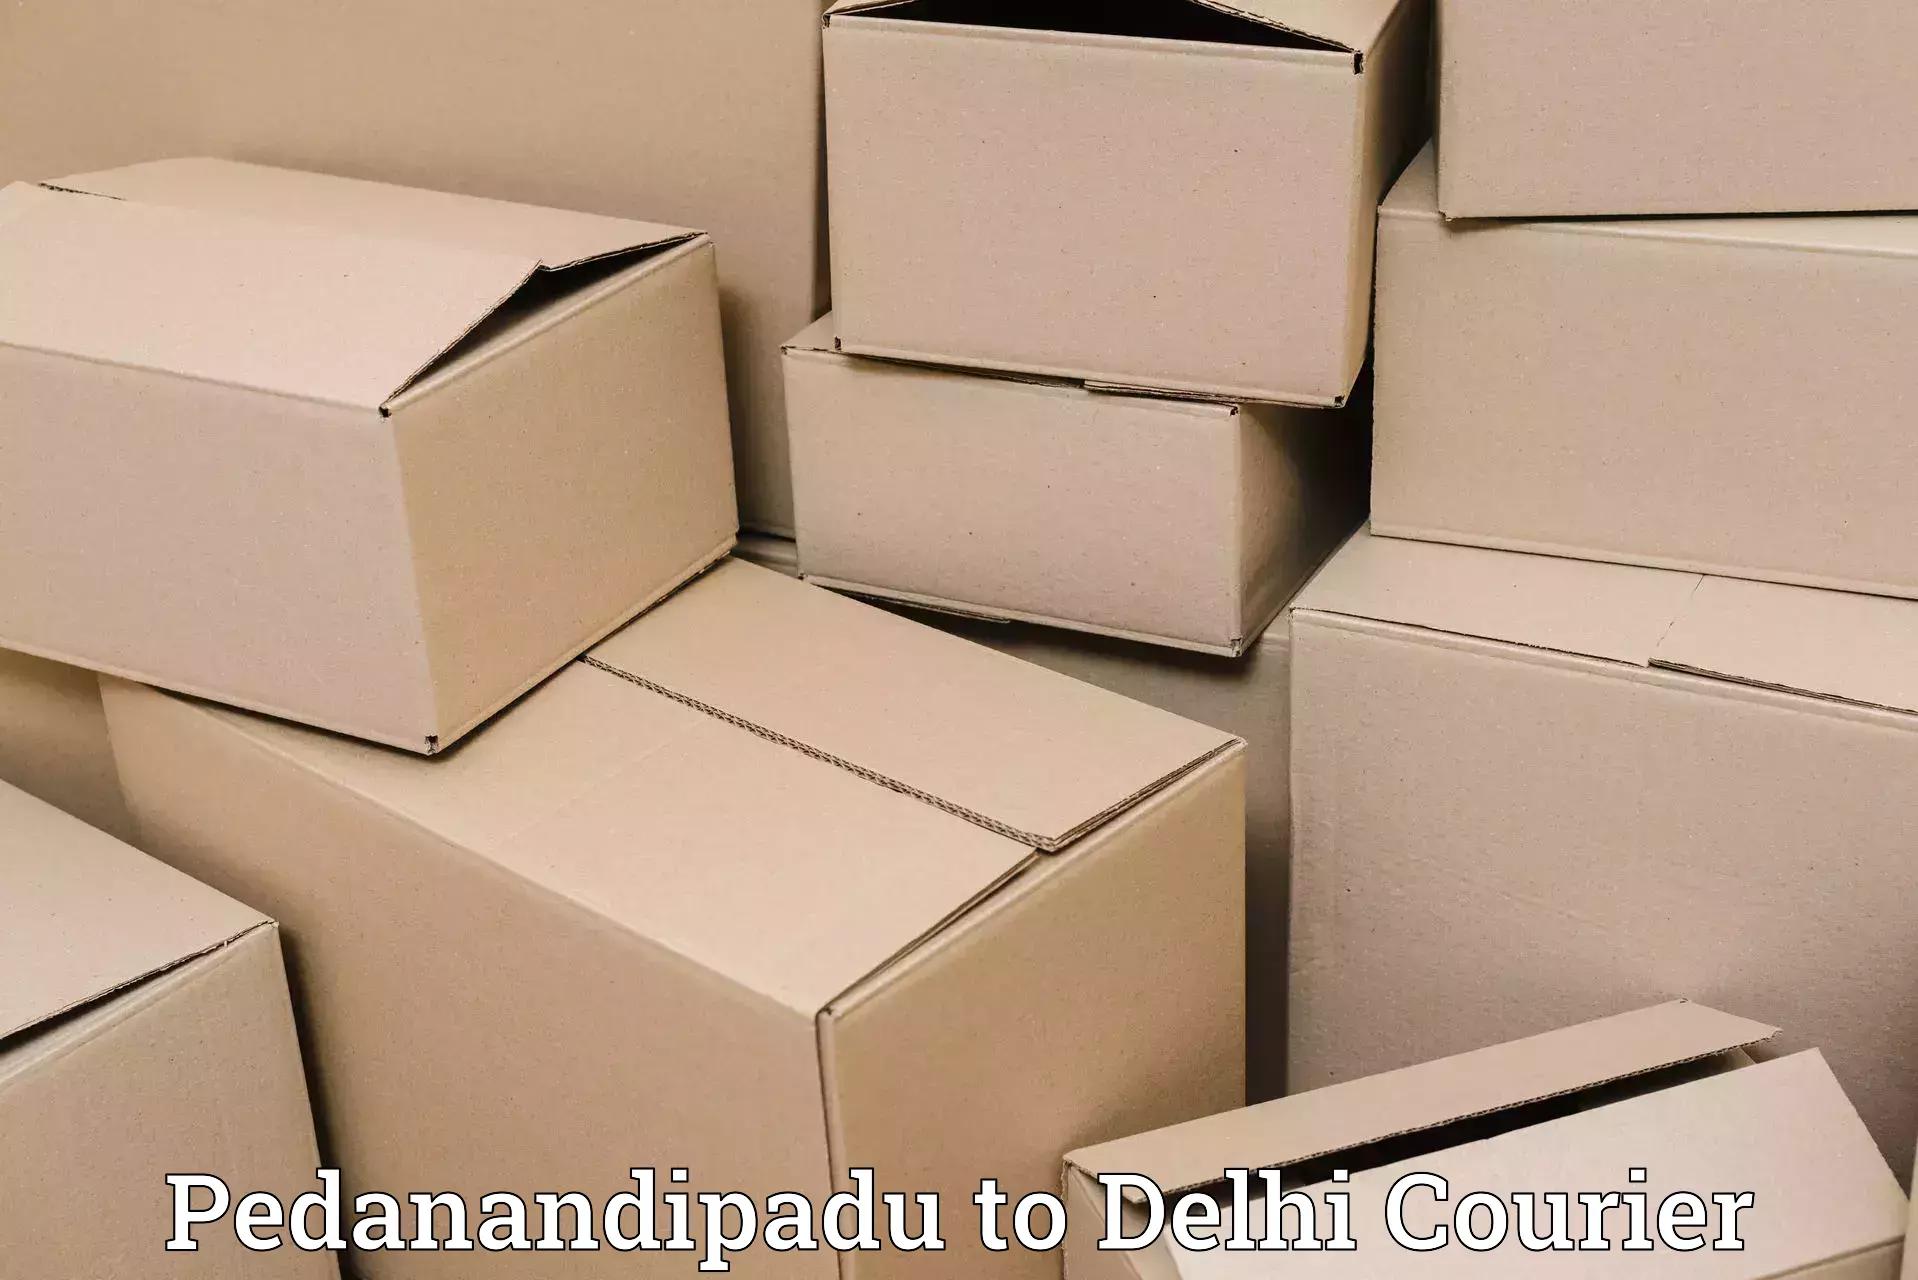 Cross-border shipping in Pedanandipadu to Jamia Hamdard New Delhi